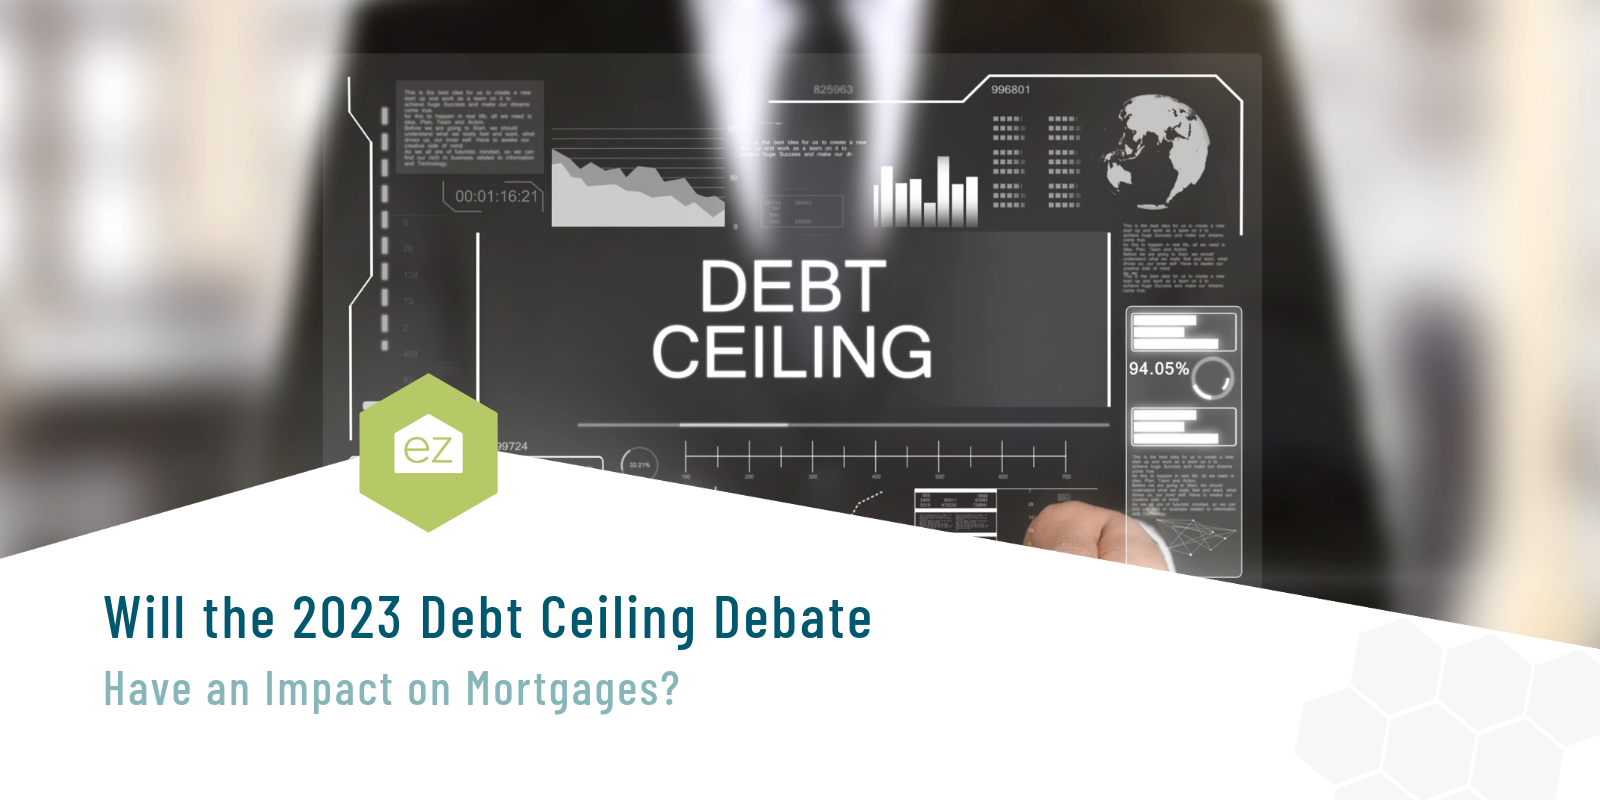 Debt Ceiling Debate 2023